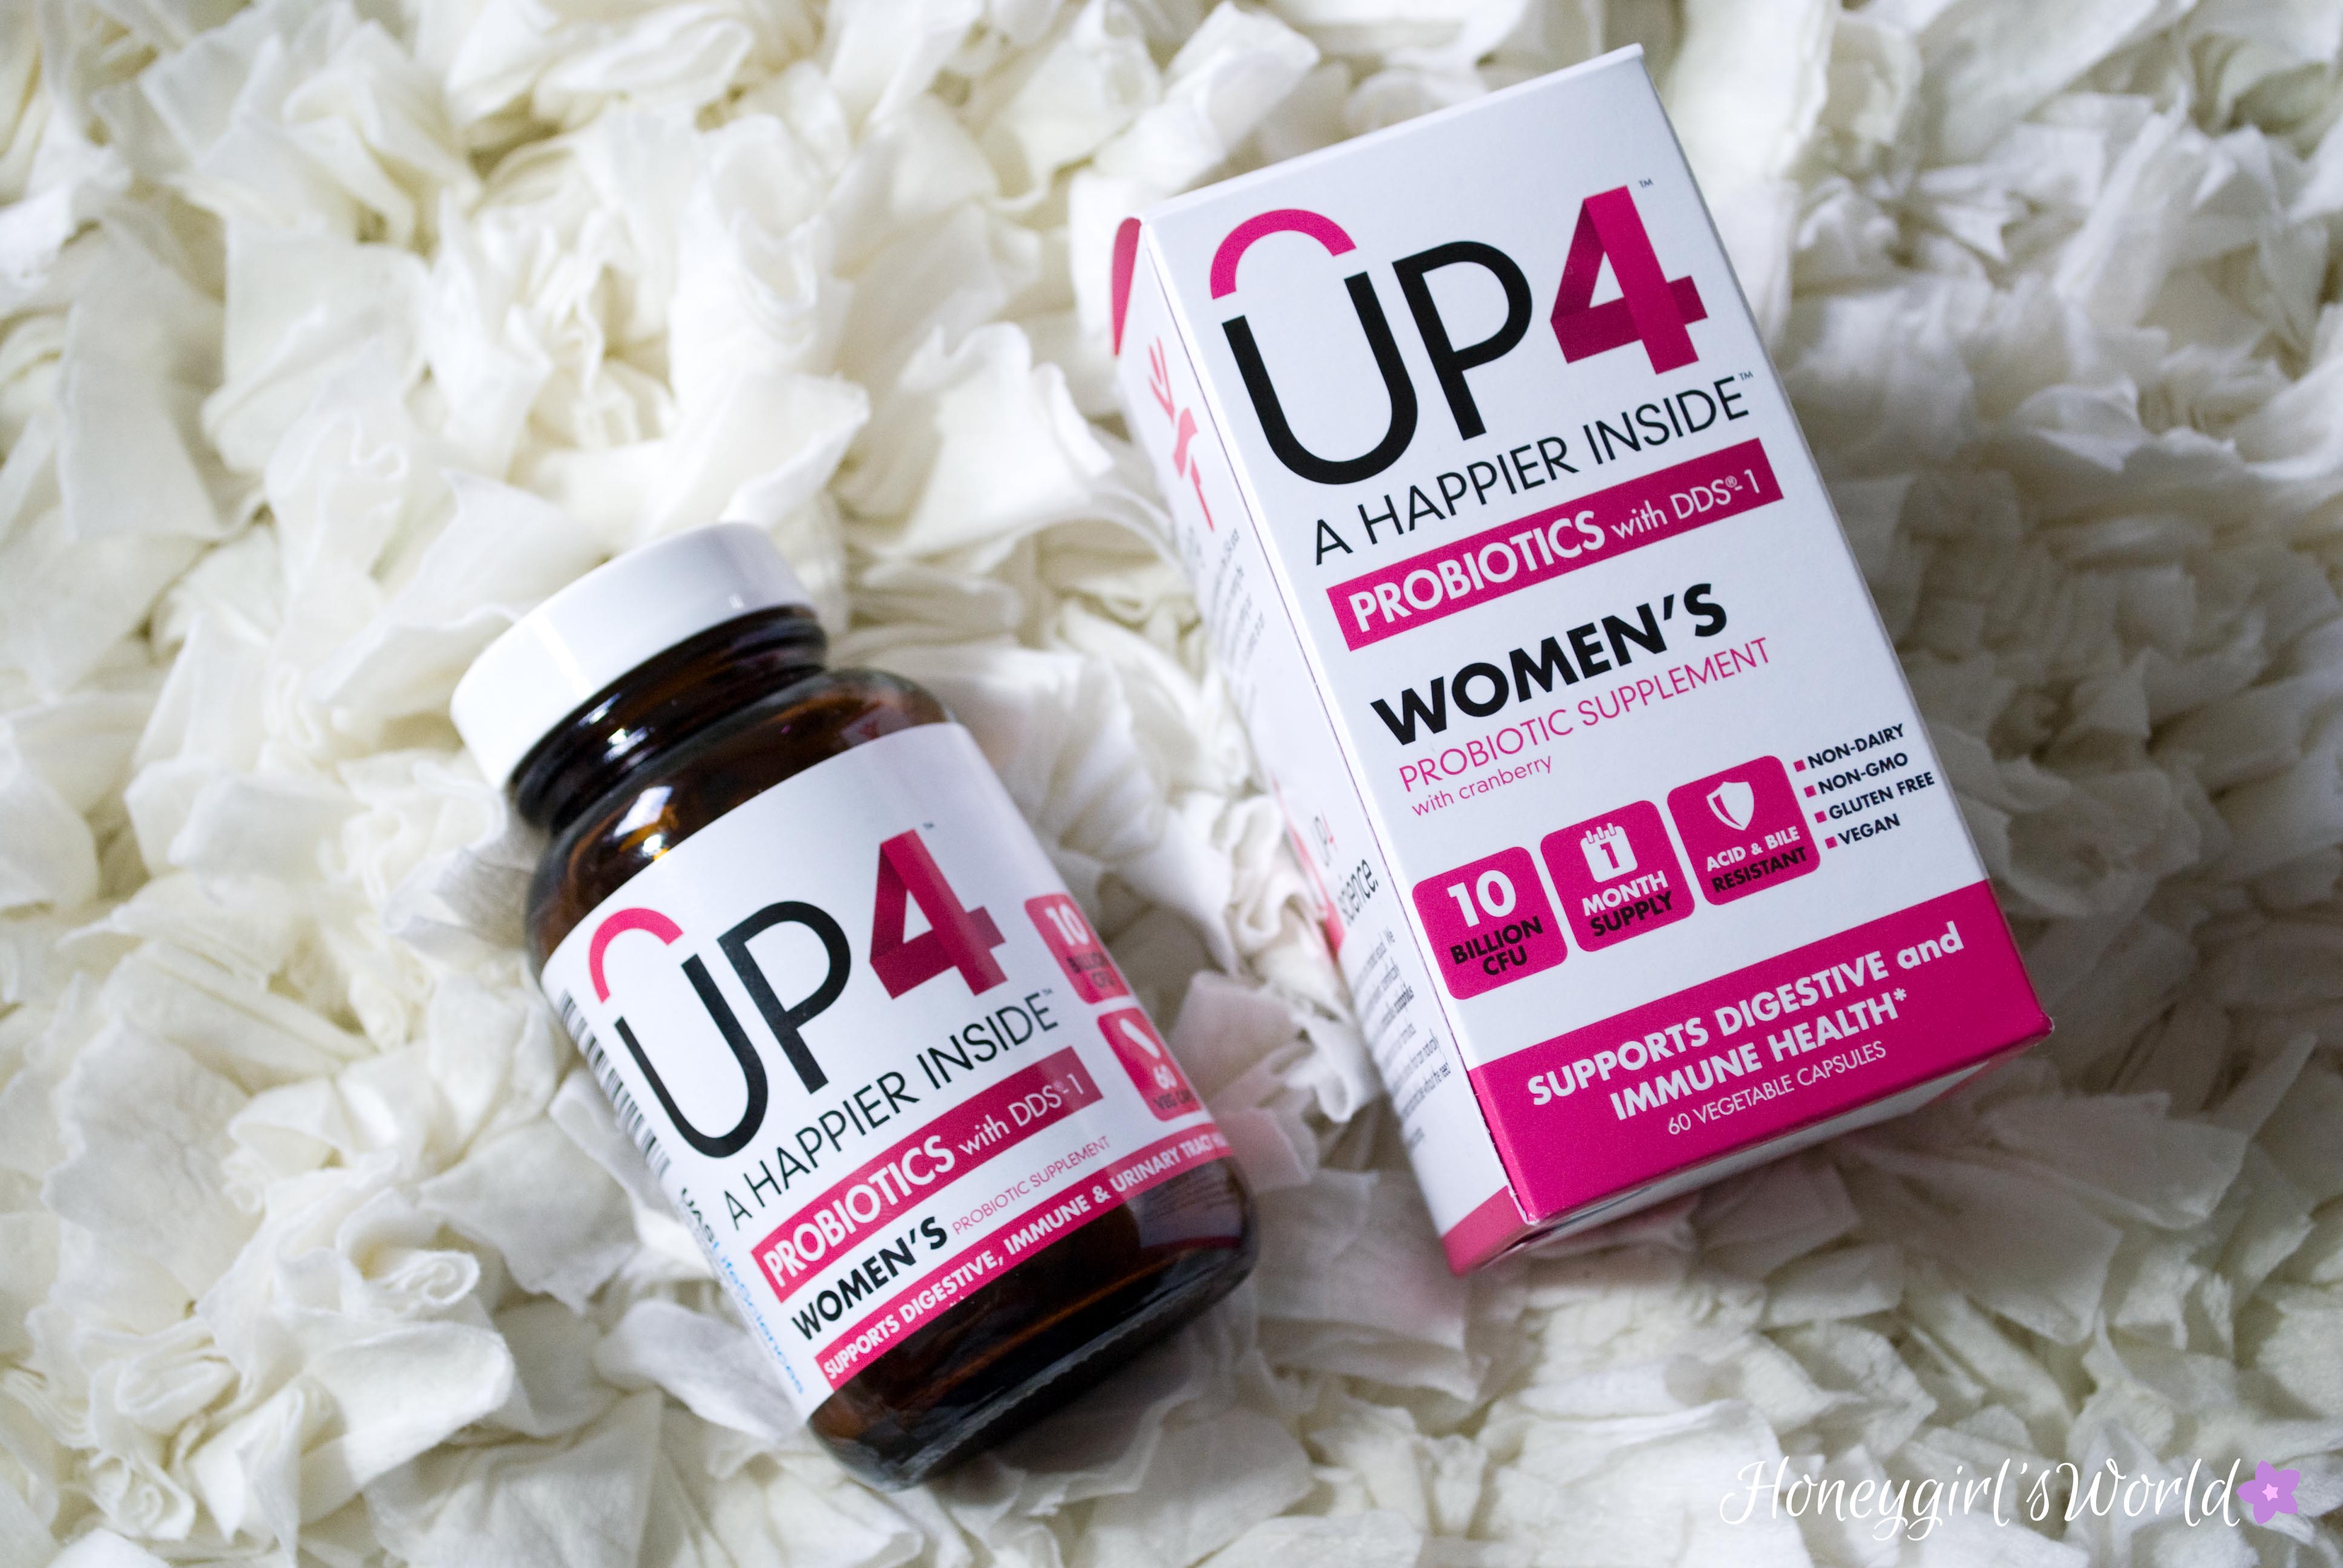 UP4 Women's Probiotics